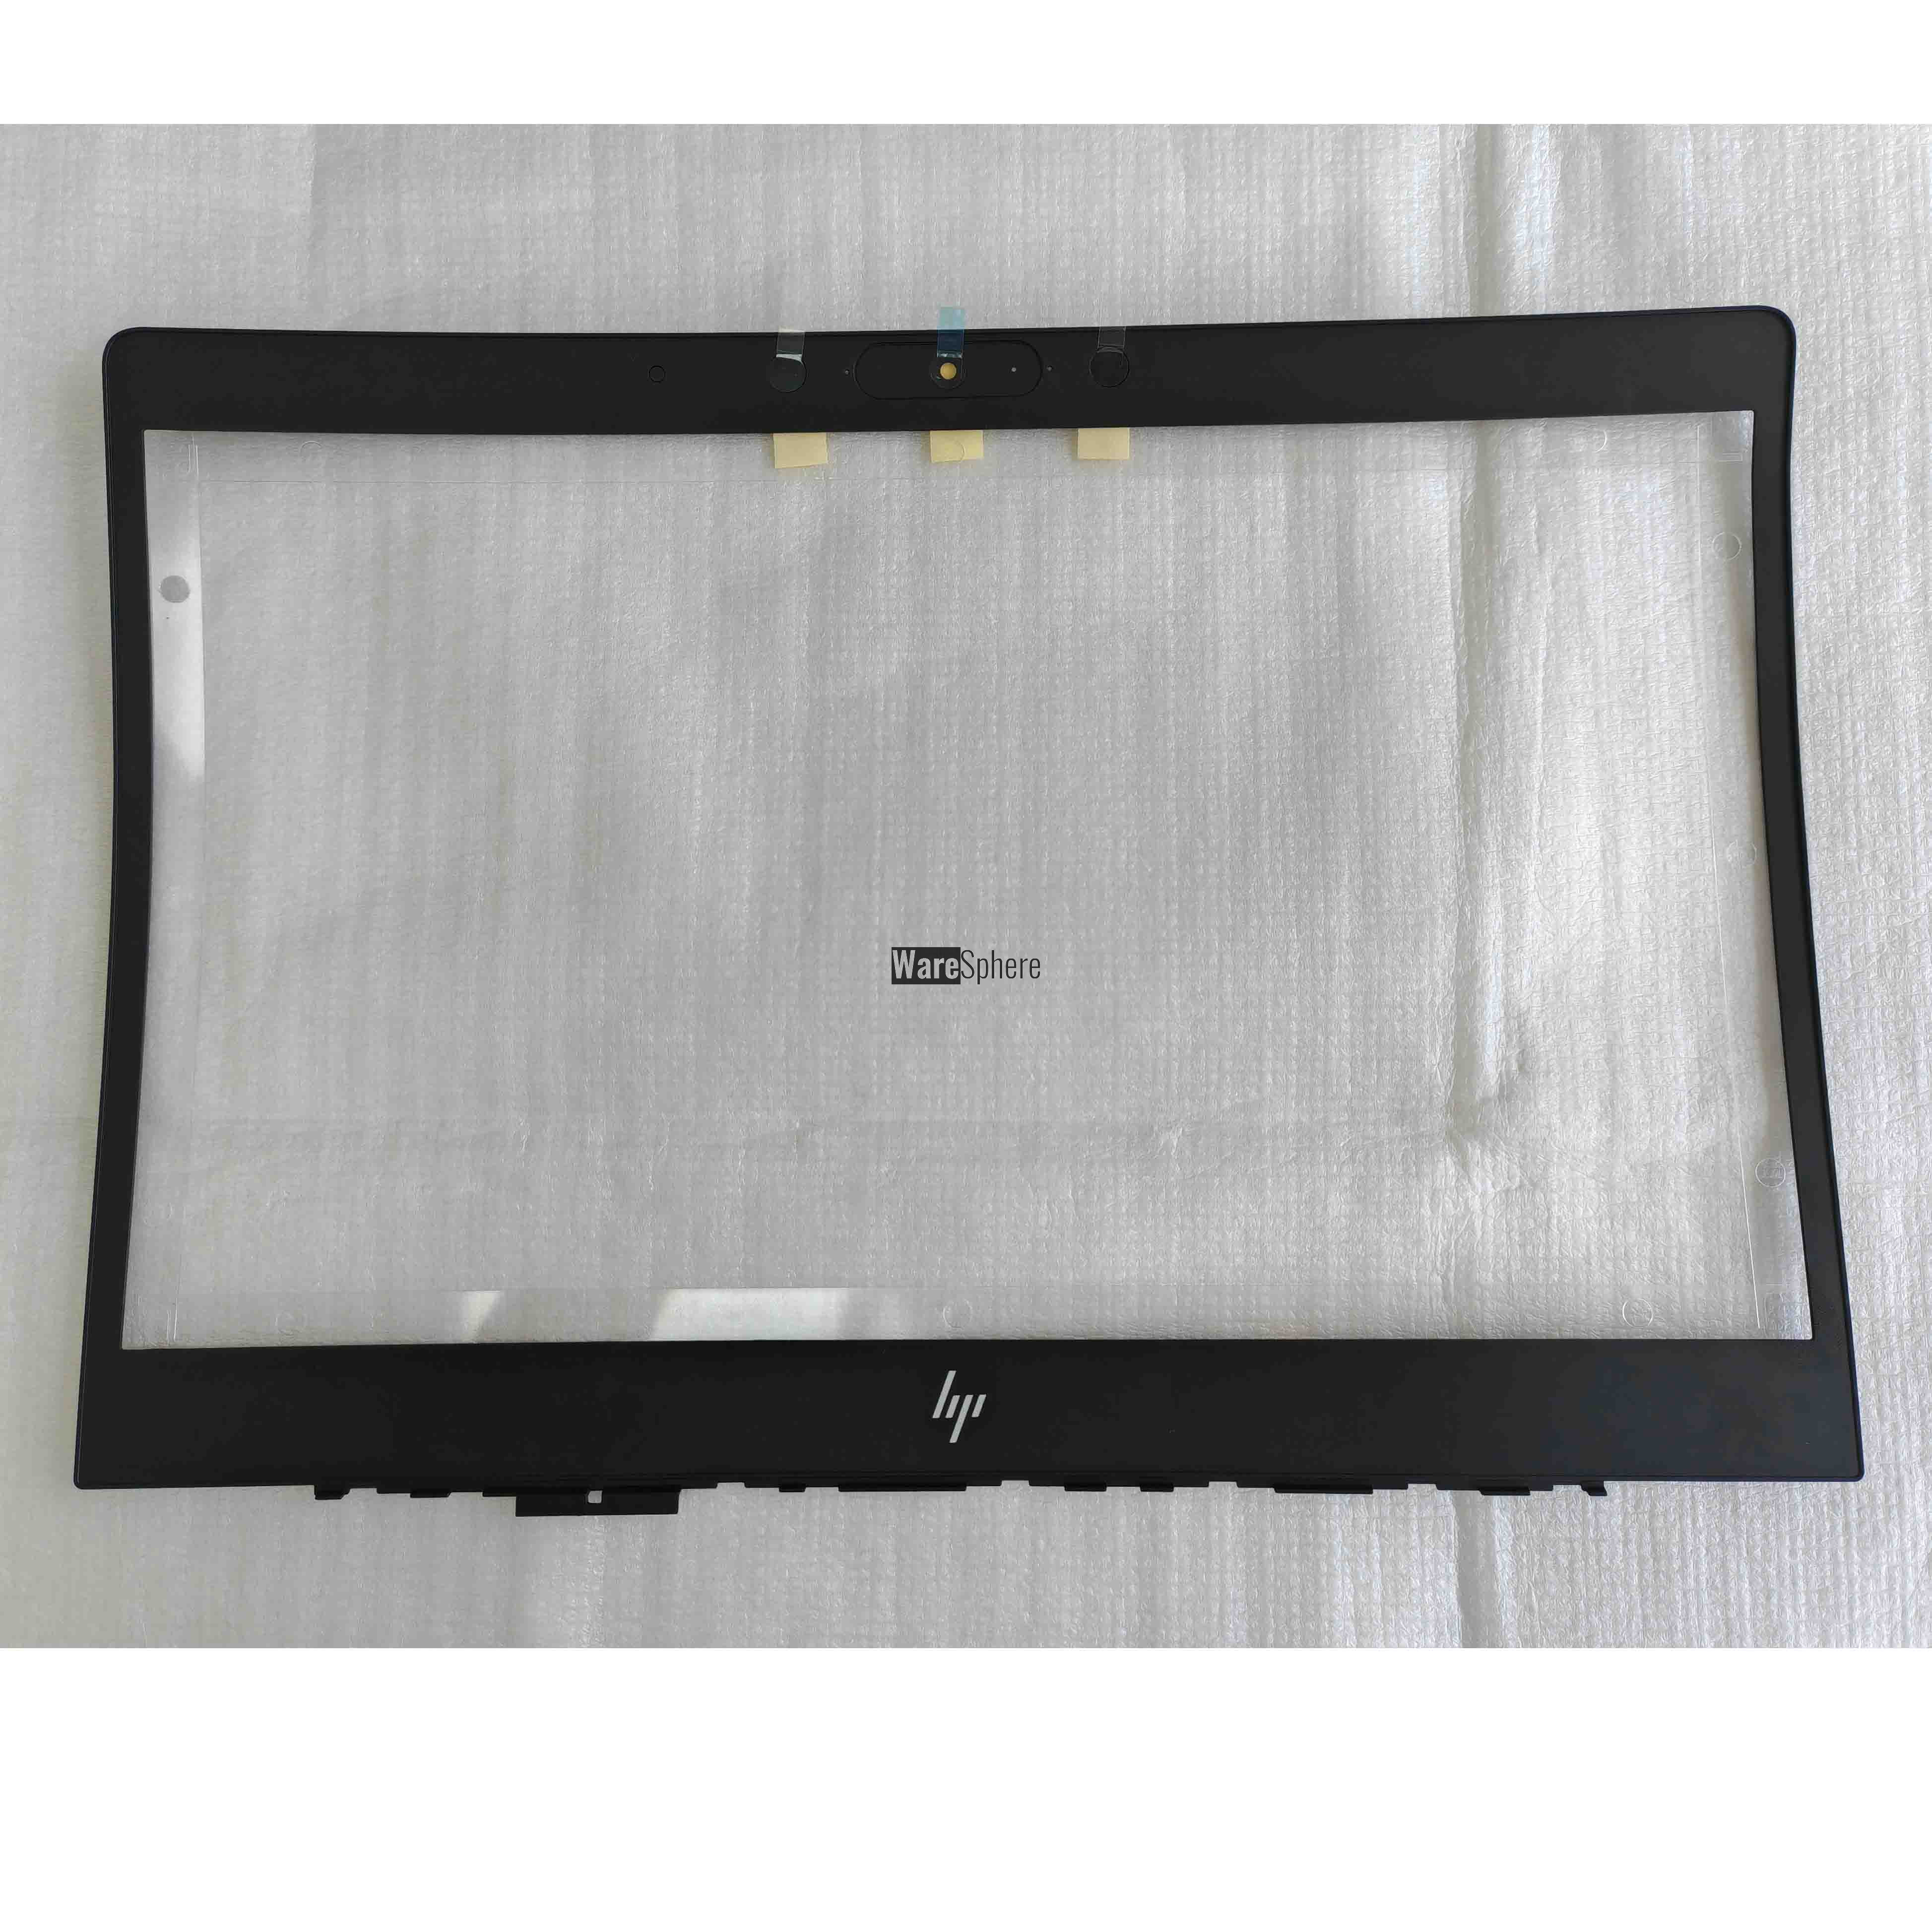 LCD Front Bezel for HP Elitebook 840 G6 6070B1487103  L62749-001 Black